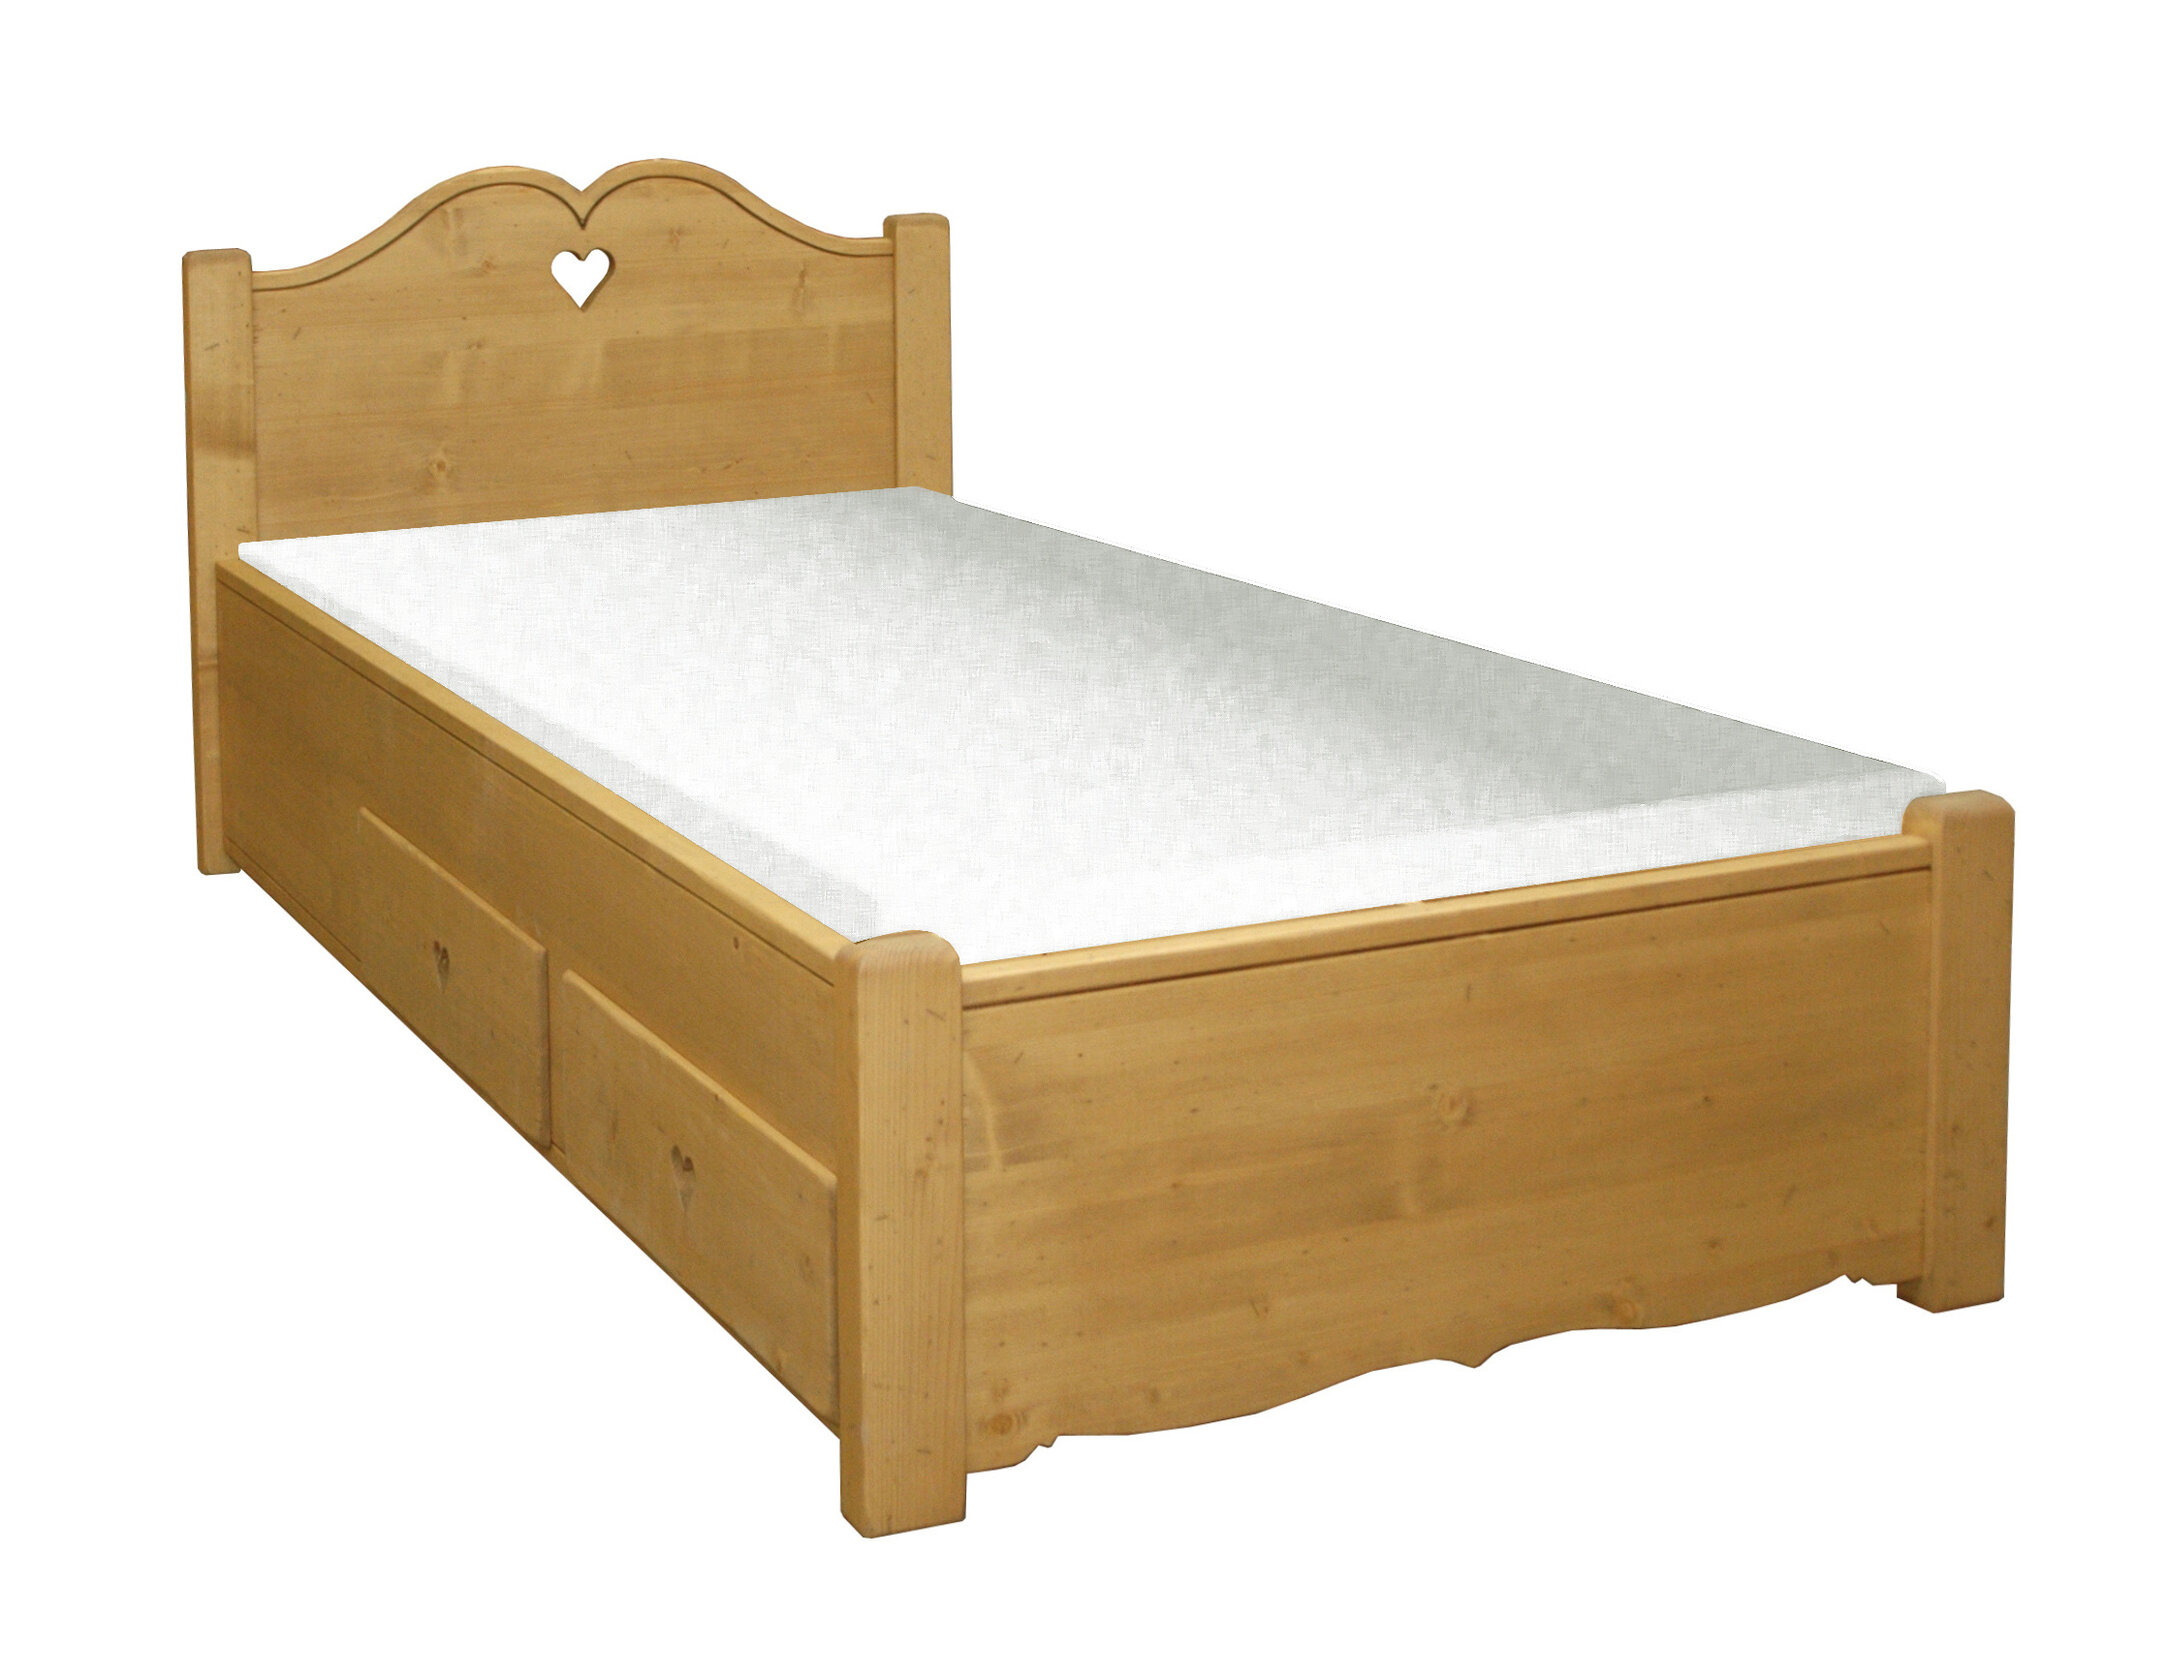 Jednolôžková posteľ z masívneho dreva s mohutným čelom v ktorom je vyrezané srdce. Celá posteľ je hnedej farby